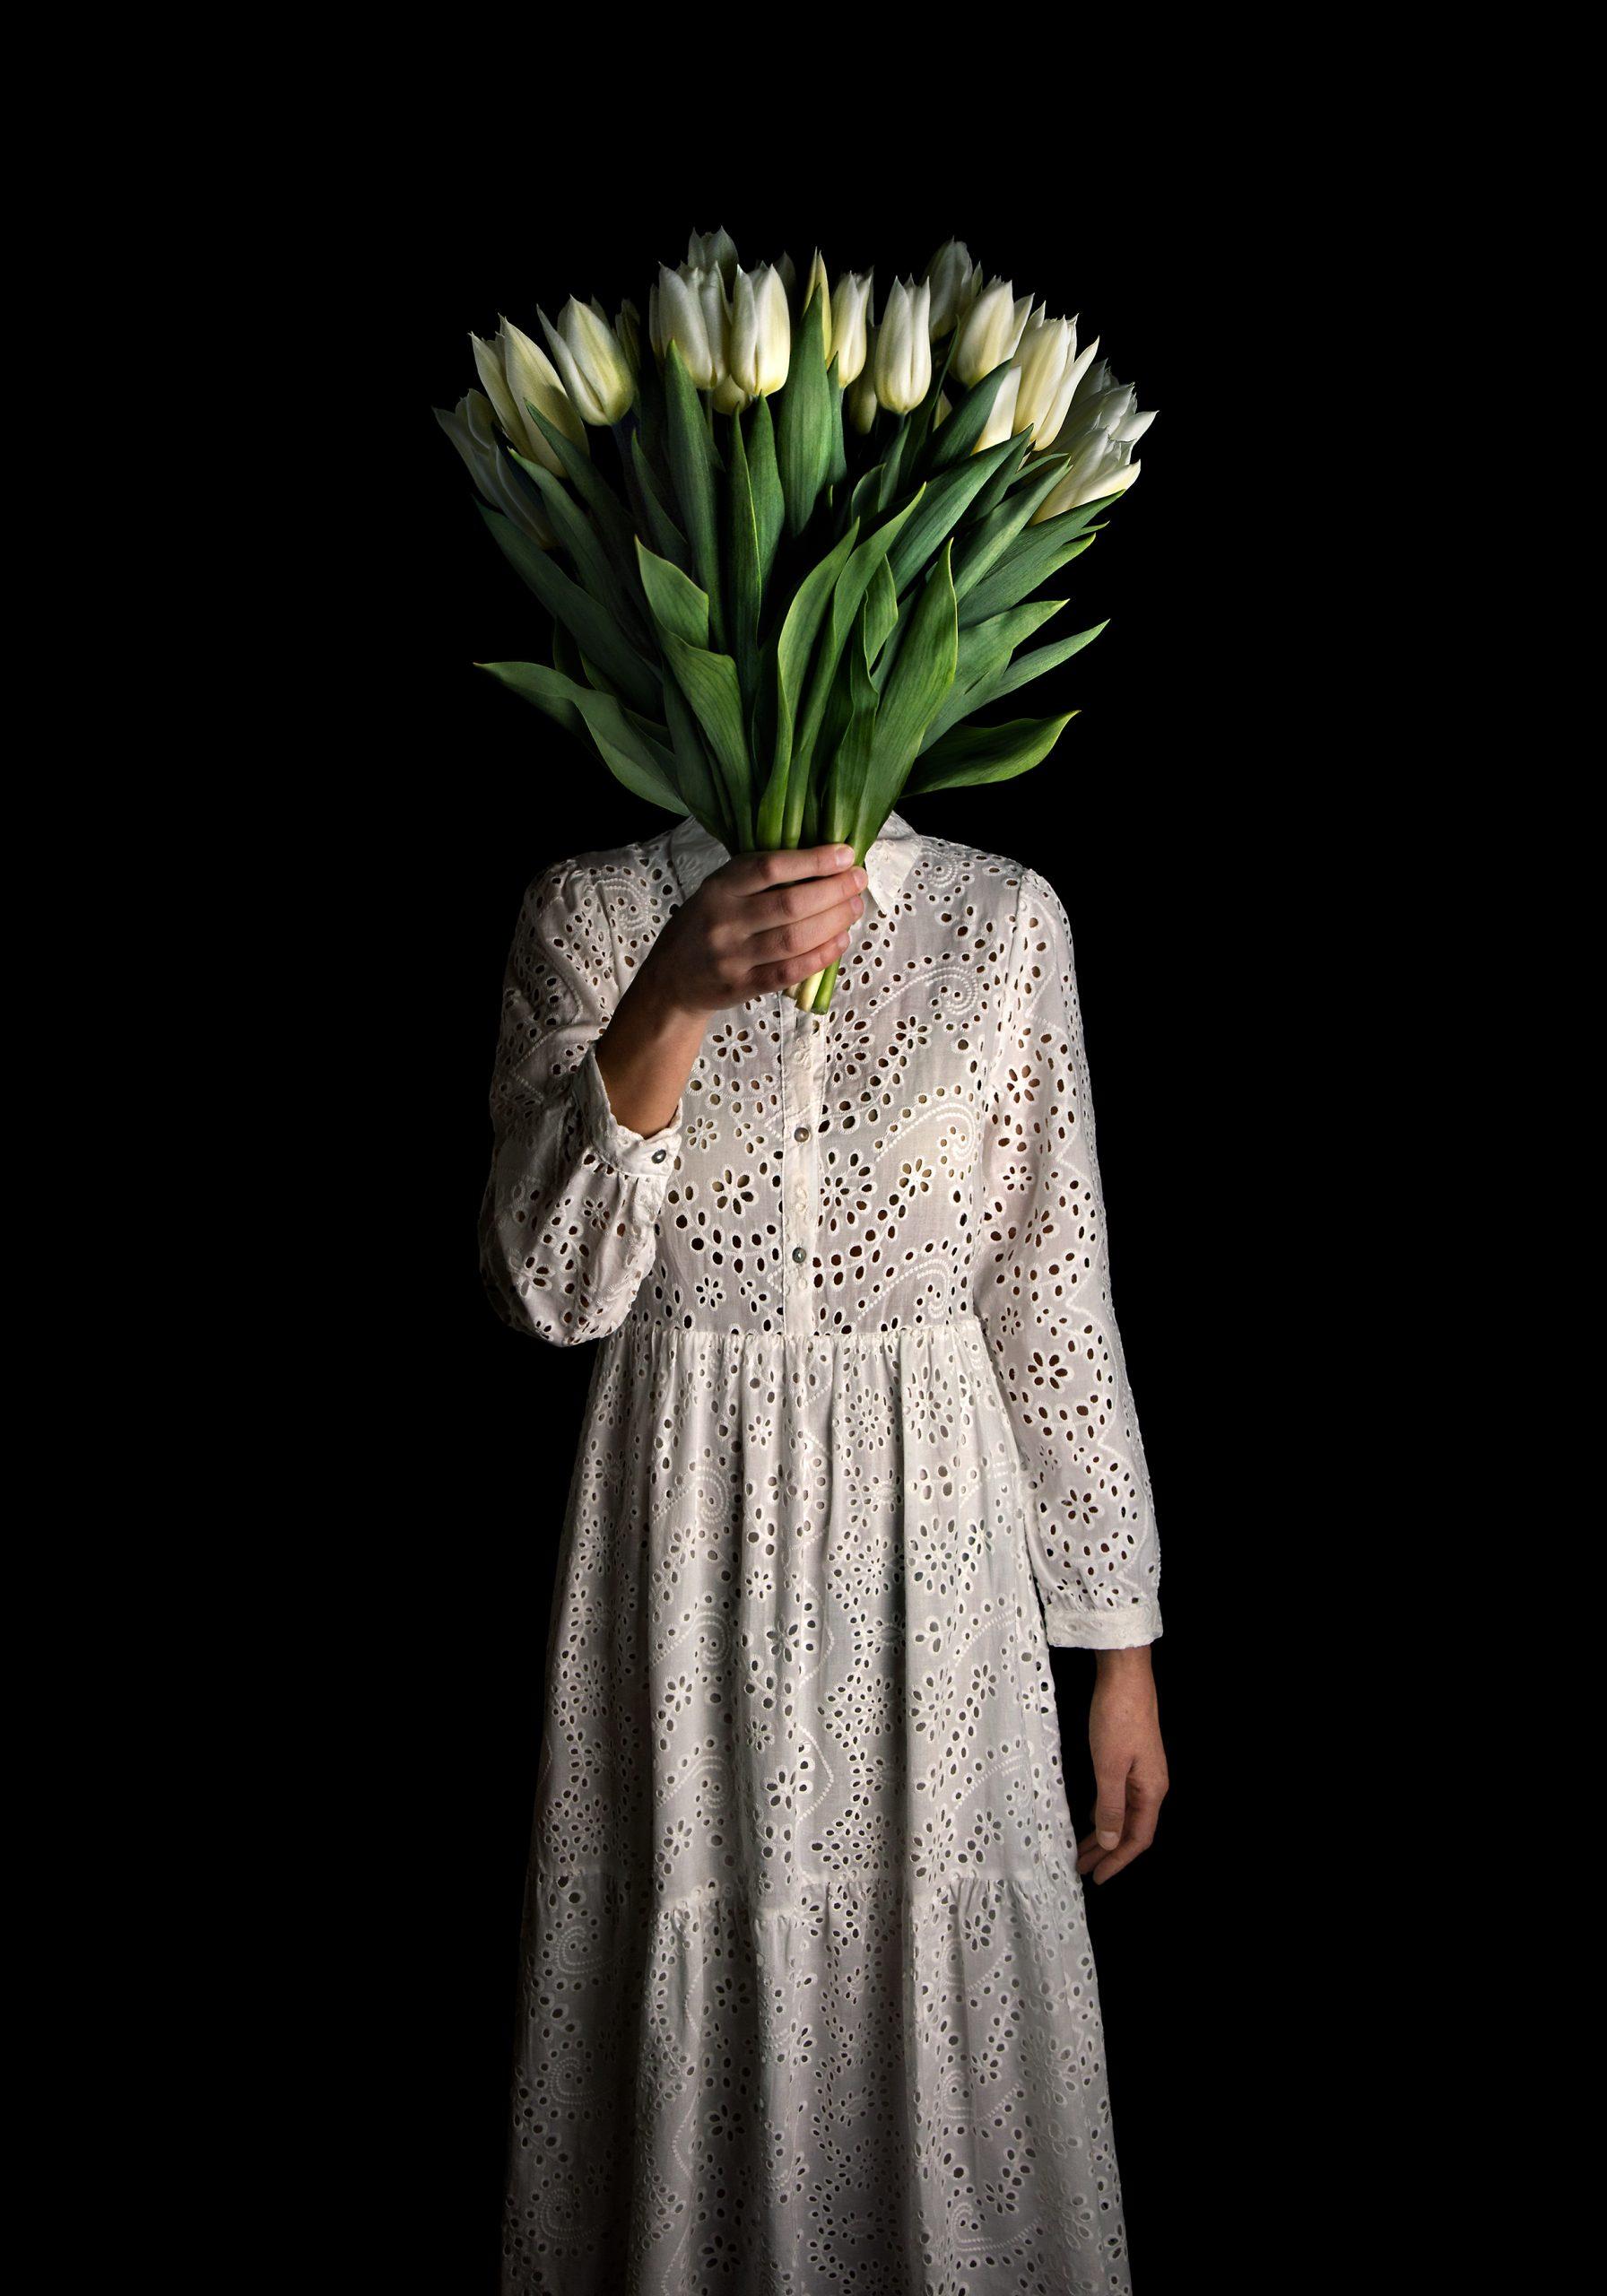 Weiße Tulpen – Photograph von Miguel Vallinas